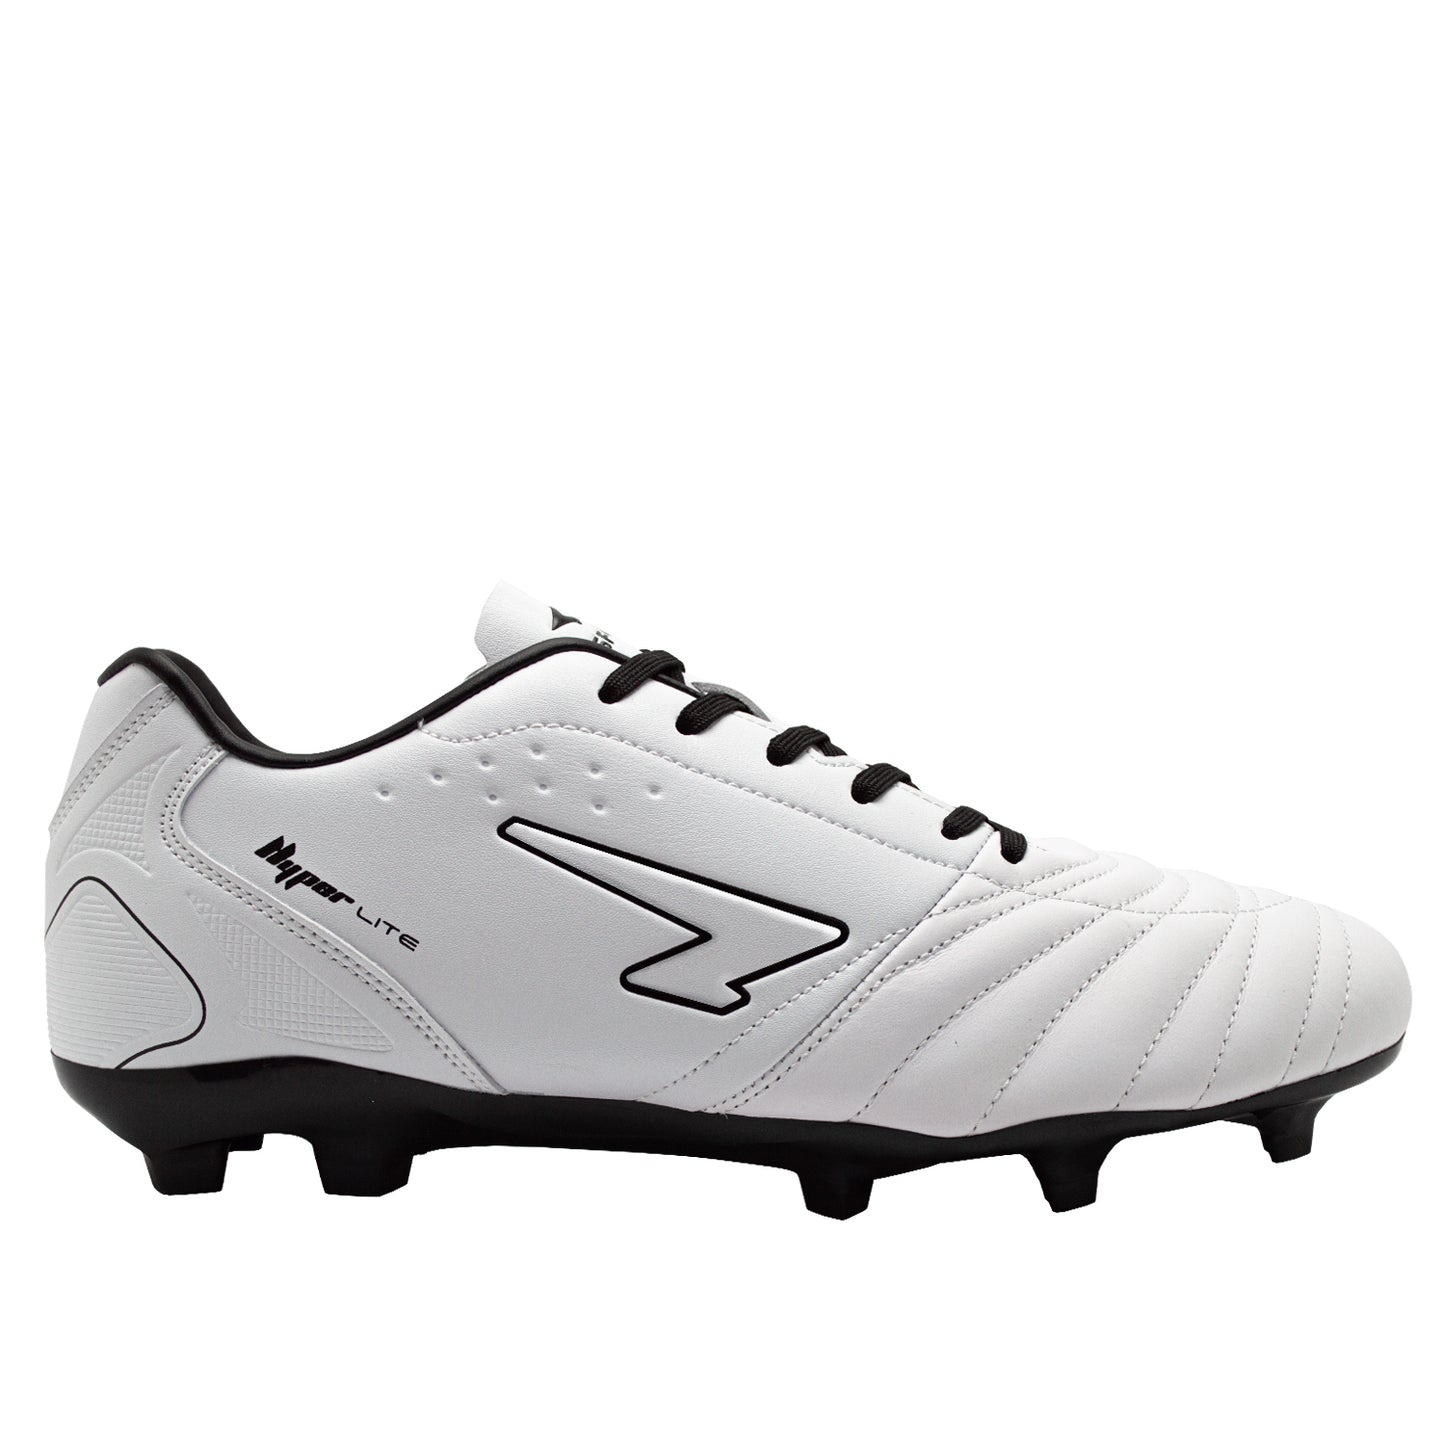 Elite Senior Leather Football Boots - White/Black